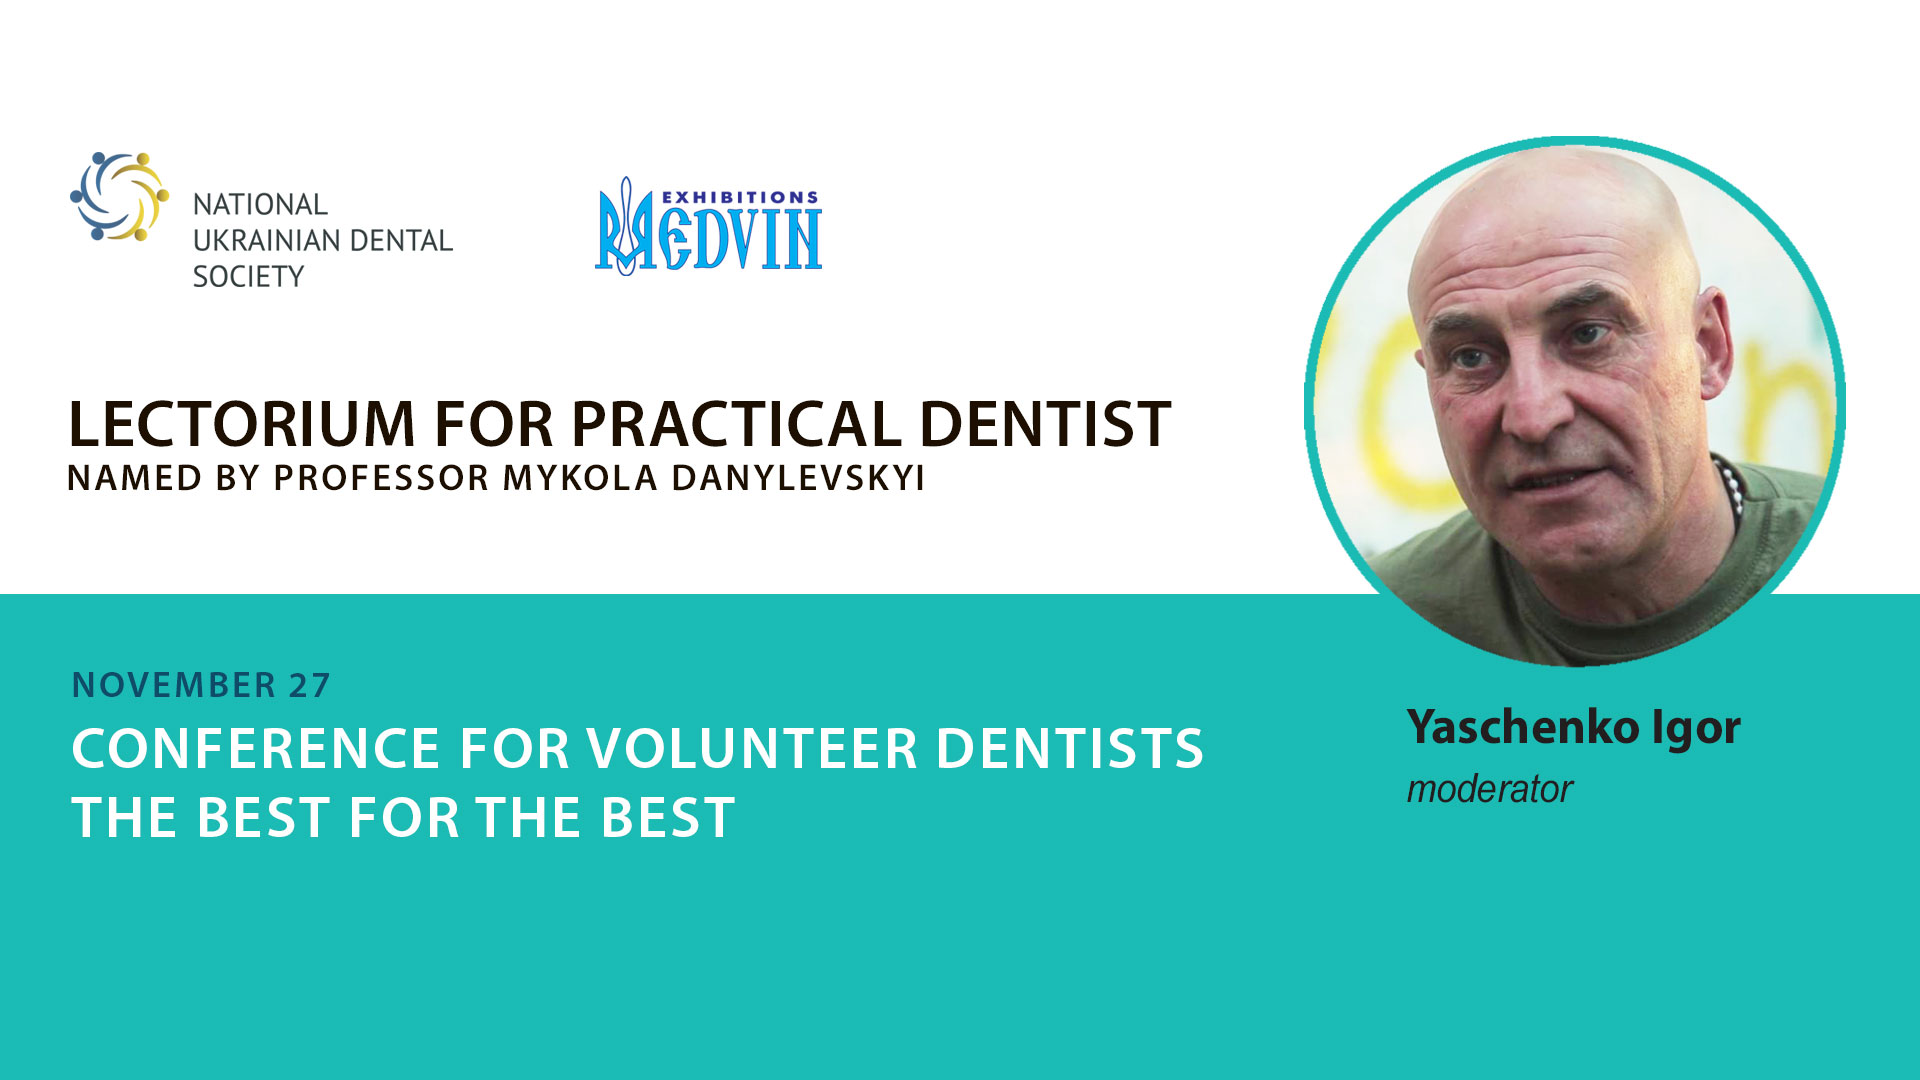 Ihor Yaschenko, head of volunteer project "Tryzub Dental"